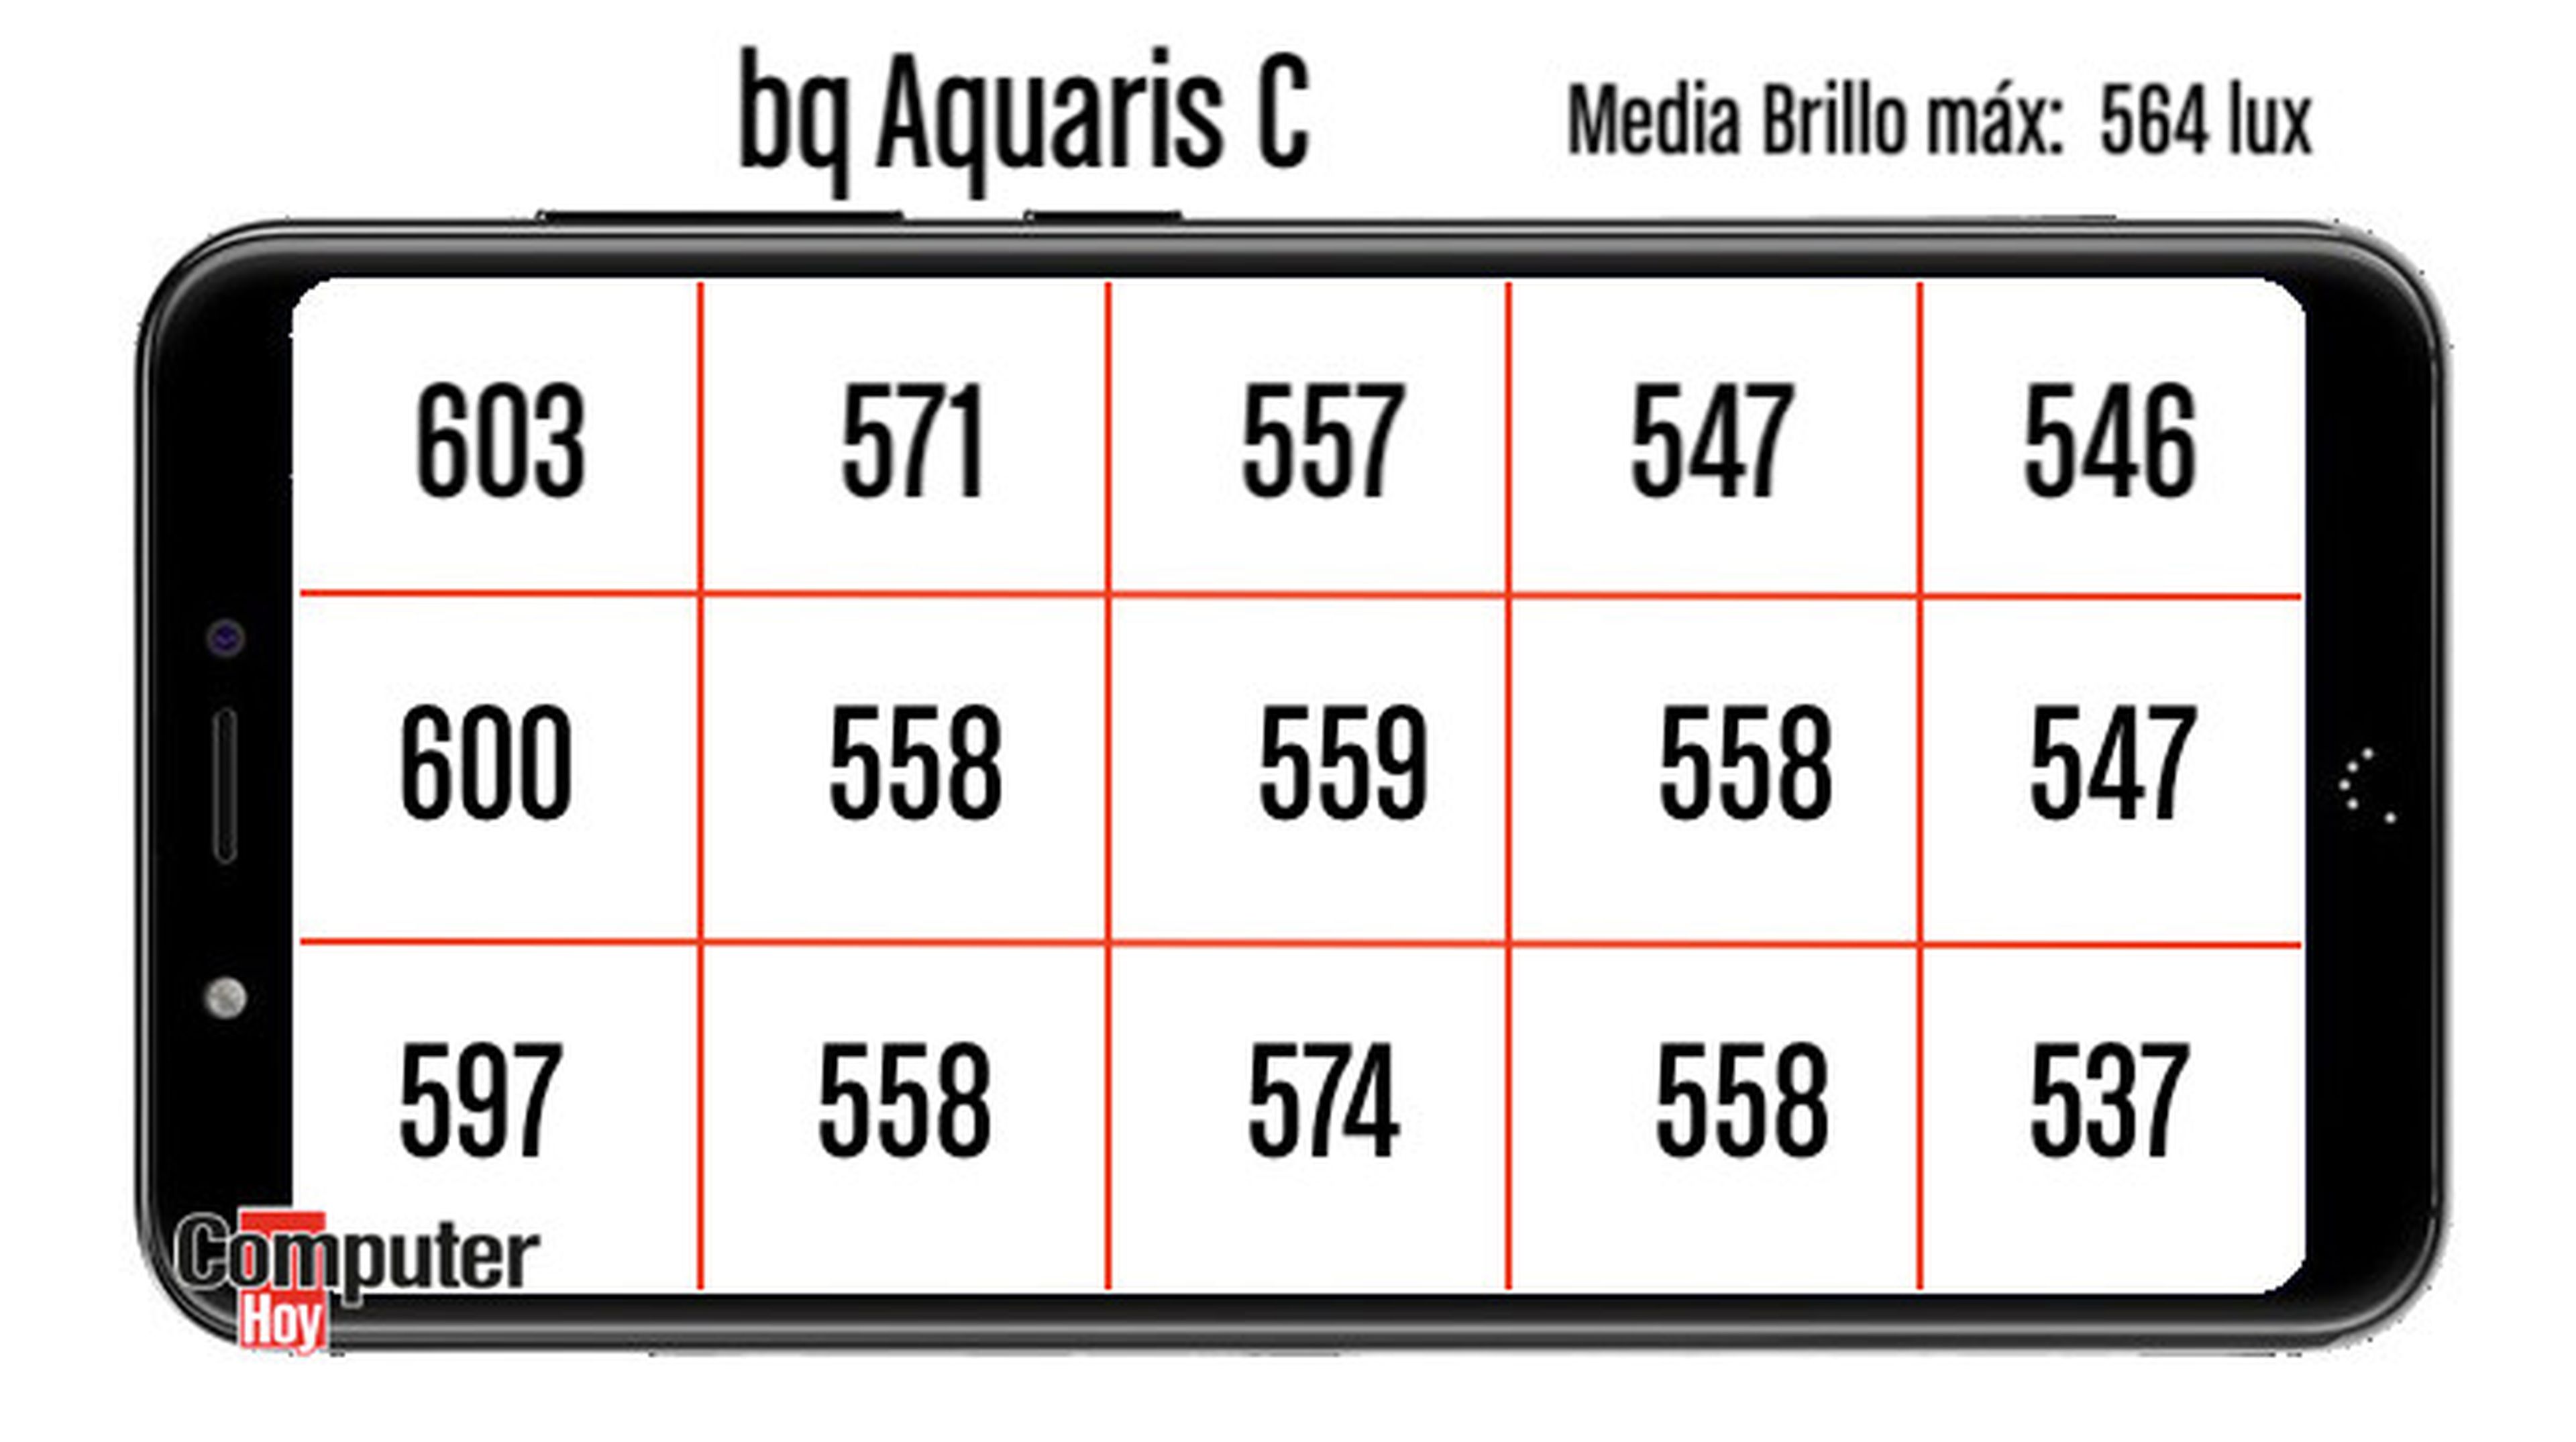 Así brilla la pantalla del bq Aquaris C por sectores.